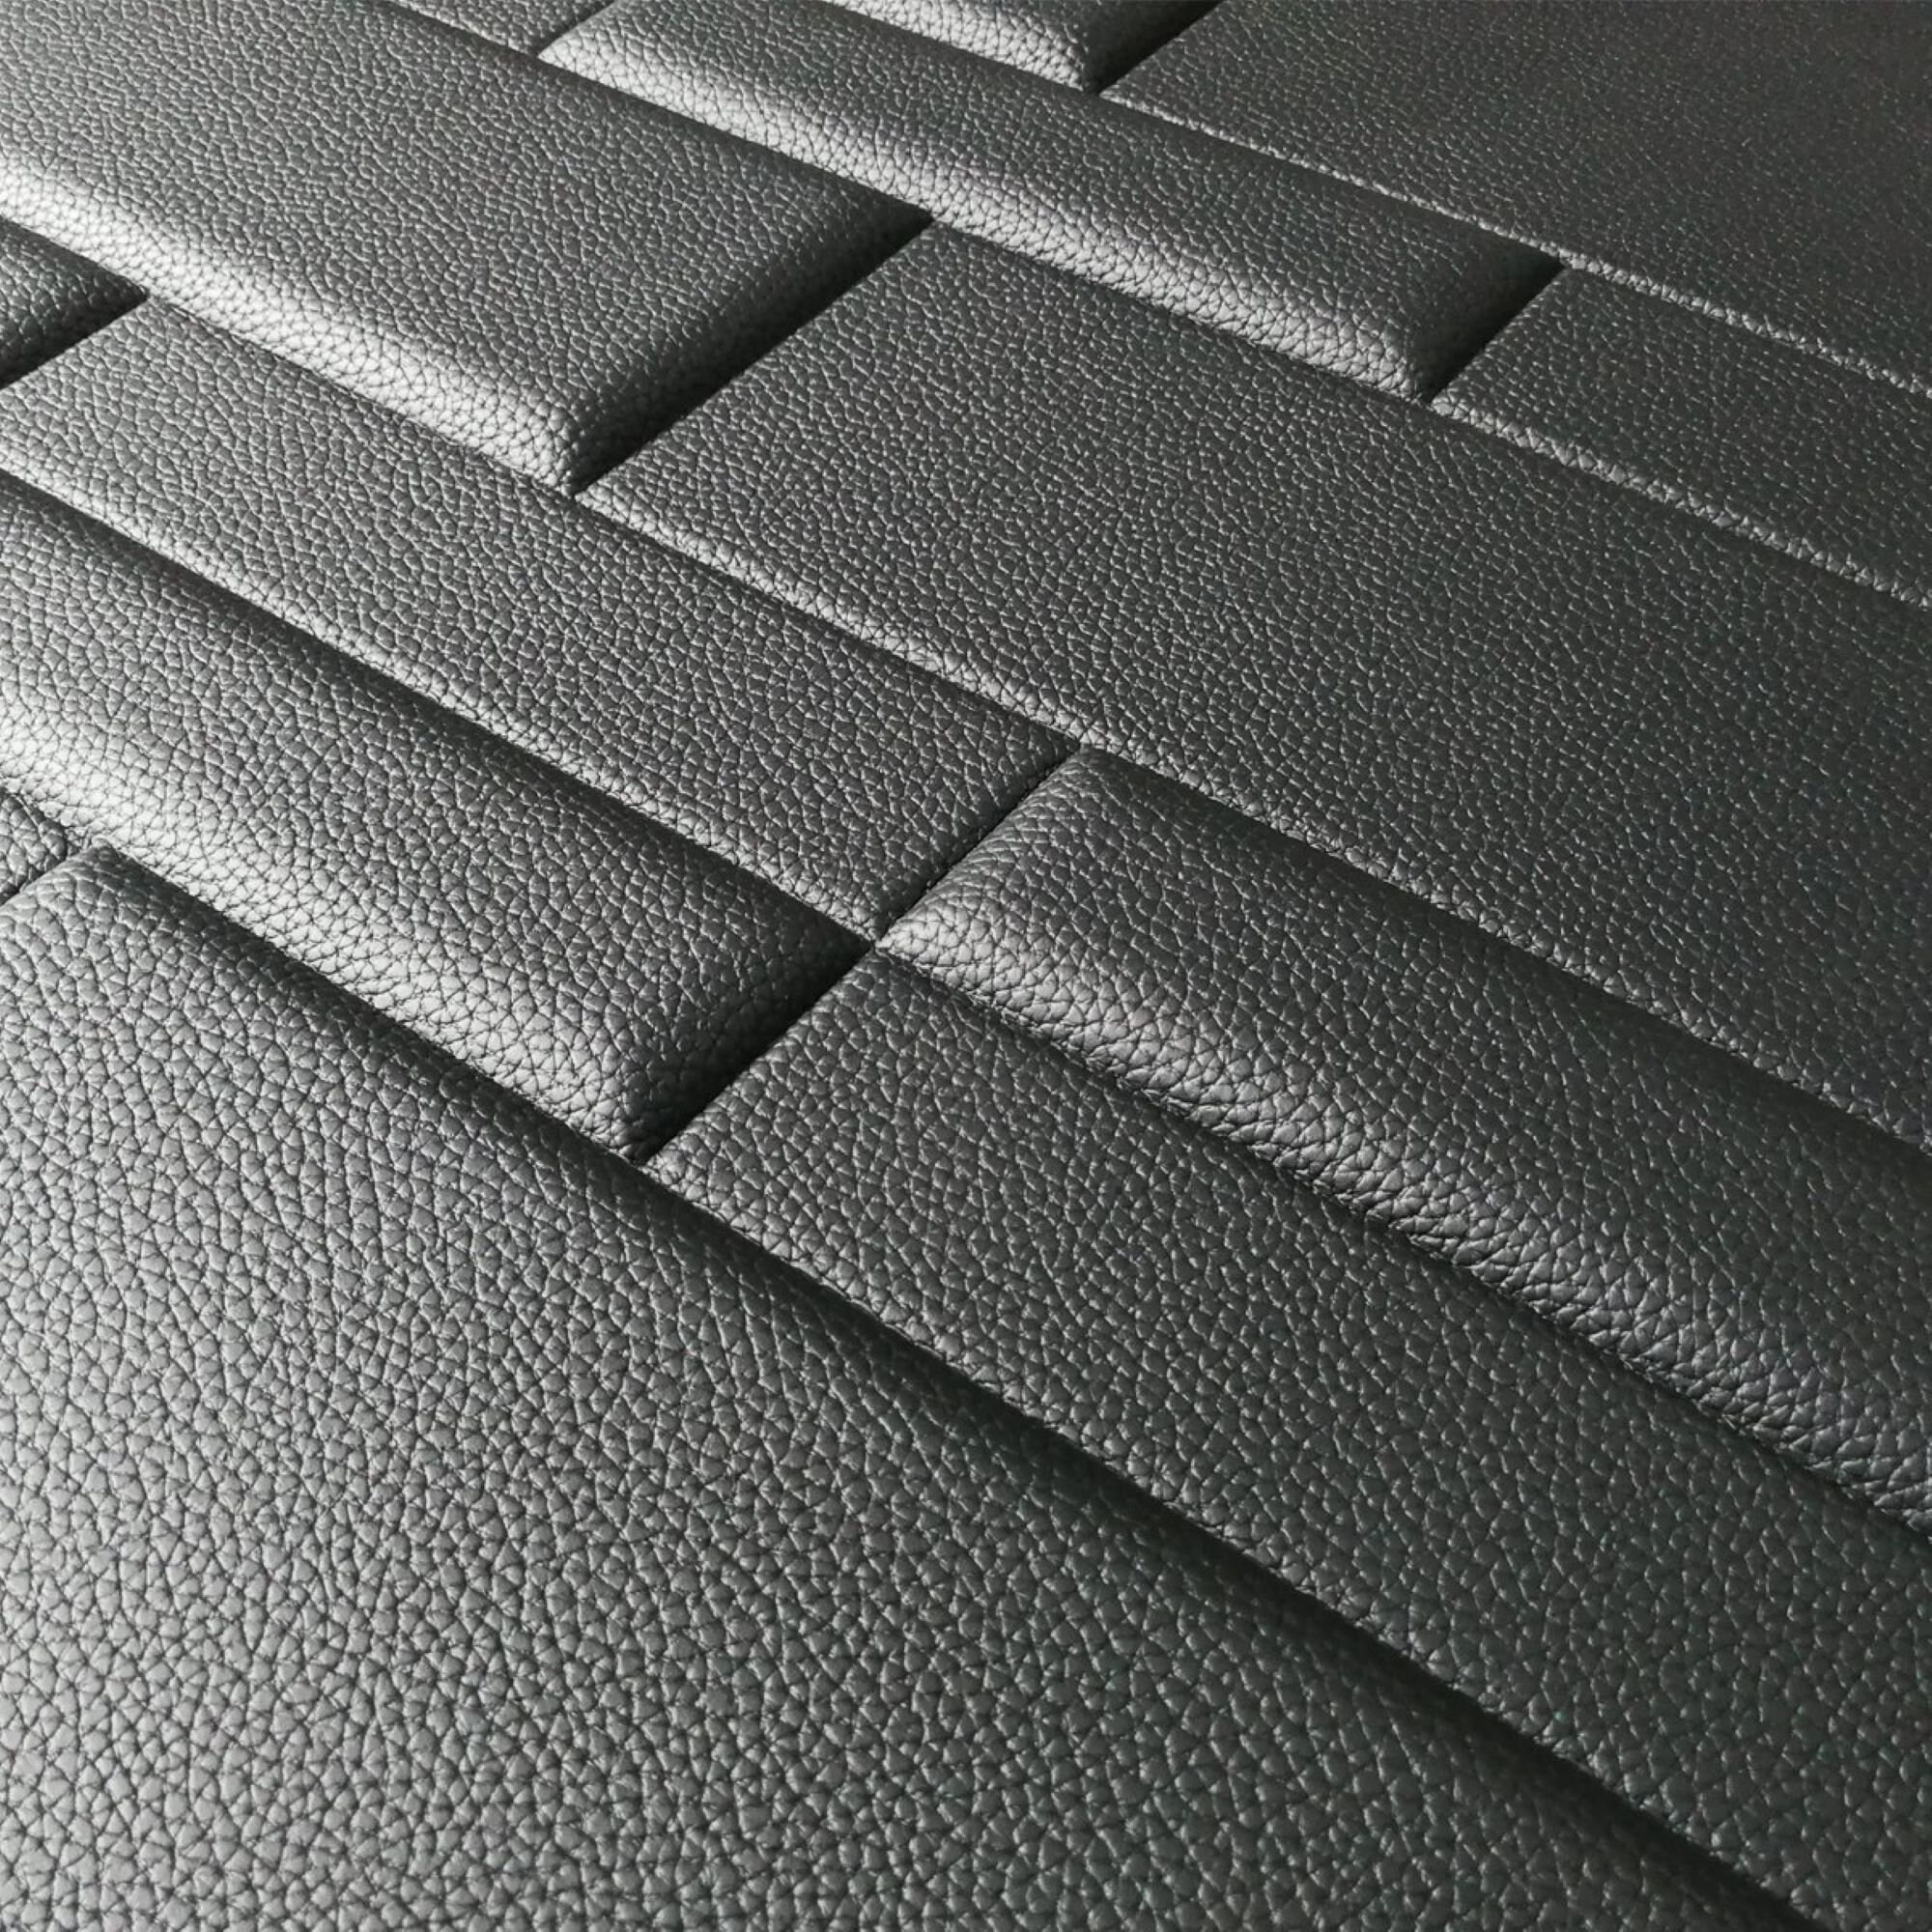 Art3d 3D Leather Tiles Decoartive 3D Wall Panels Black Brick | Etsy